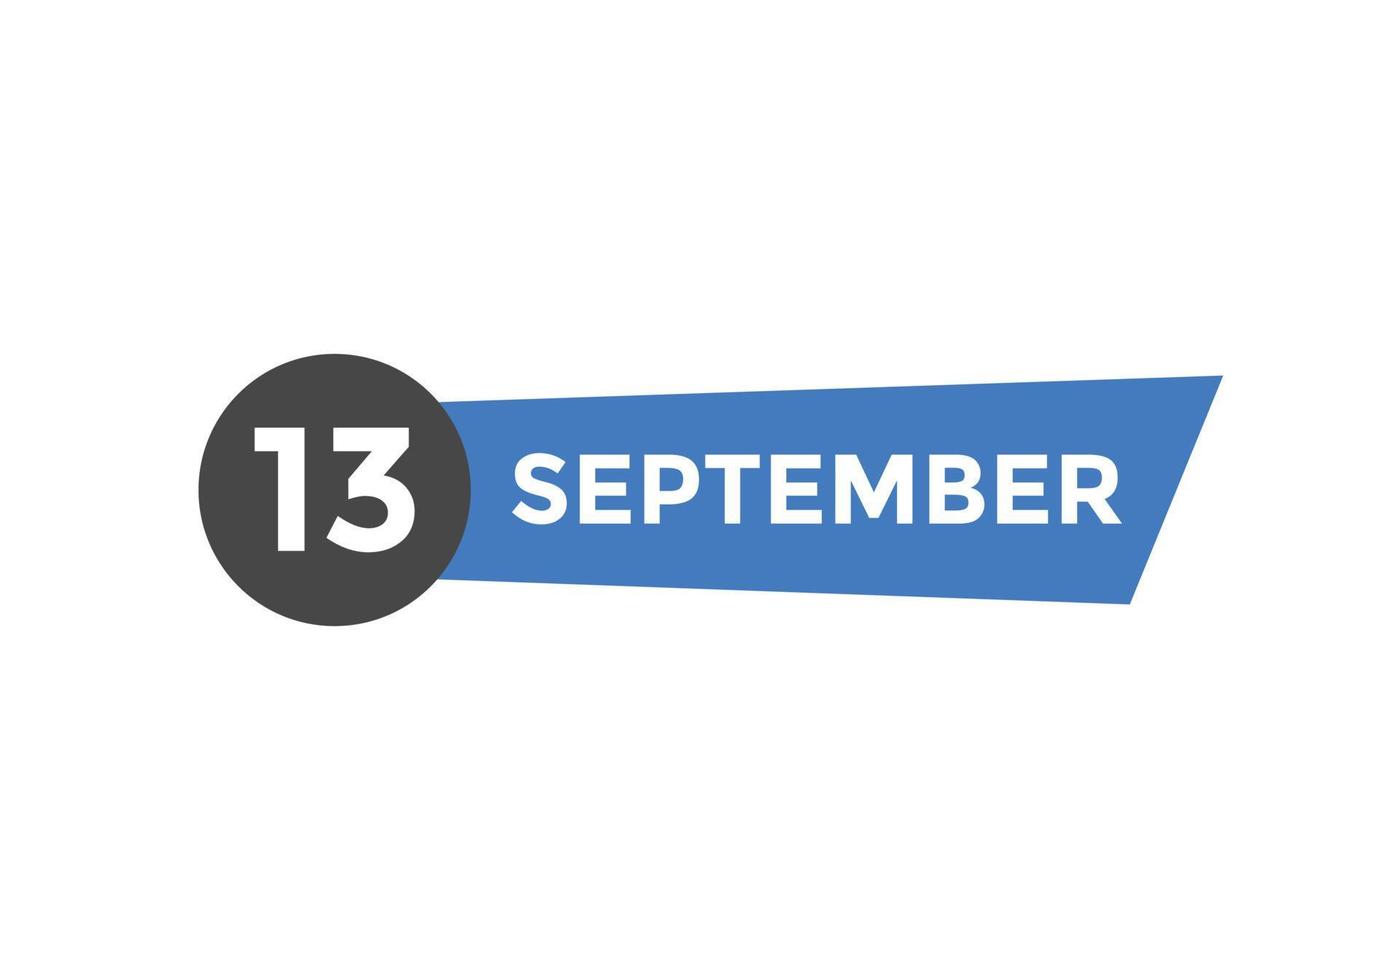 Recordatorio del calendario del 13 de septiembre. Plantilla de icono de calendario diario del 13 de septiembre. plantilla de diseño de icono de calendario 13 de septiembre. ilustración vectorial vector